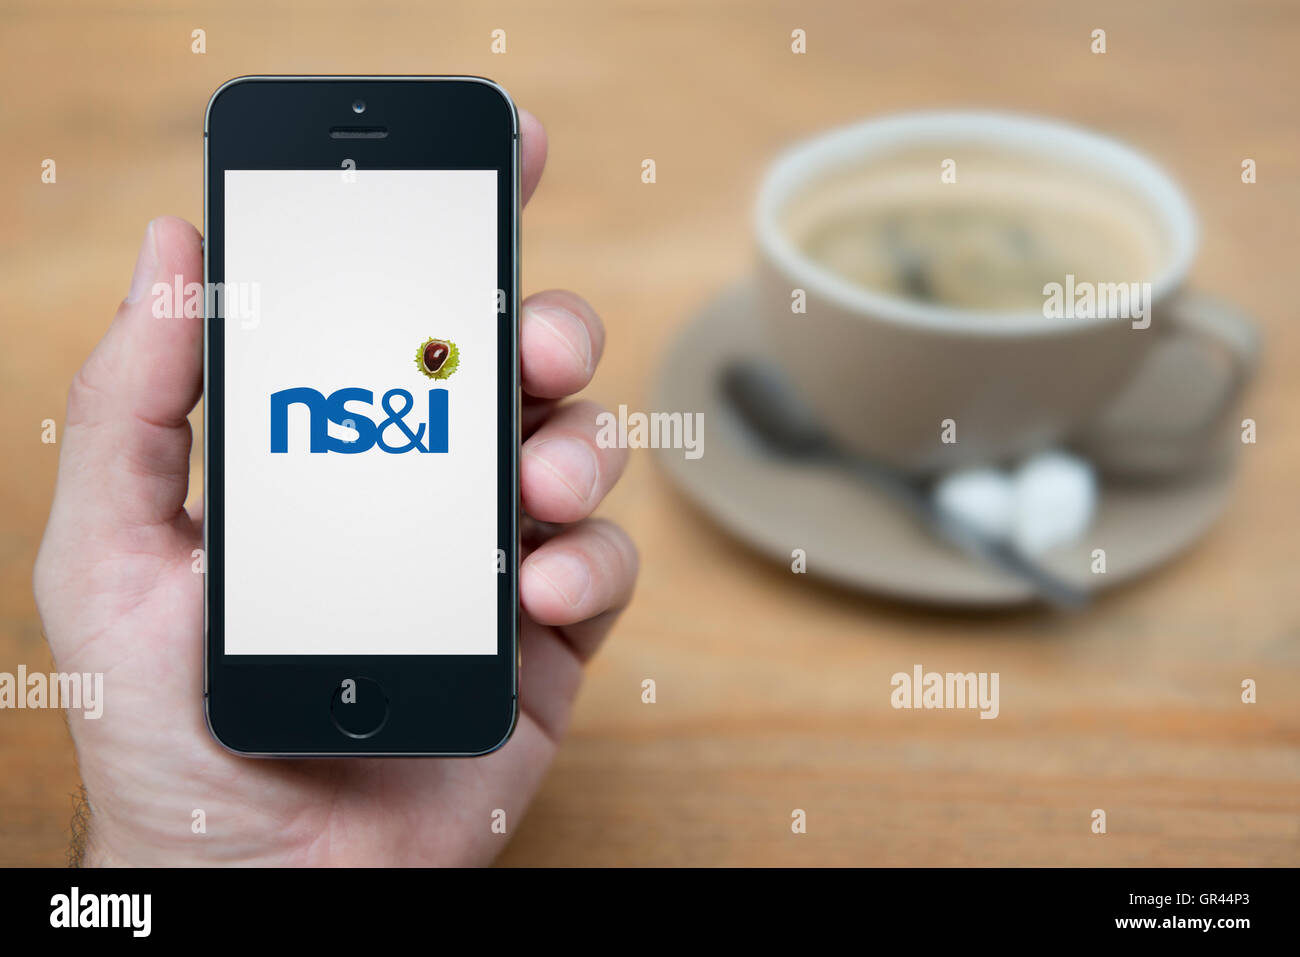 Ein Mann schaut auf seinem iPhone, das die britische Regierung der nationalen Ersparnis und Investitionen NS&I Logo (nur redaktionelle Nutzung). Stockfoto